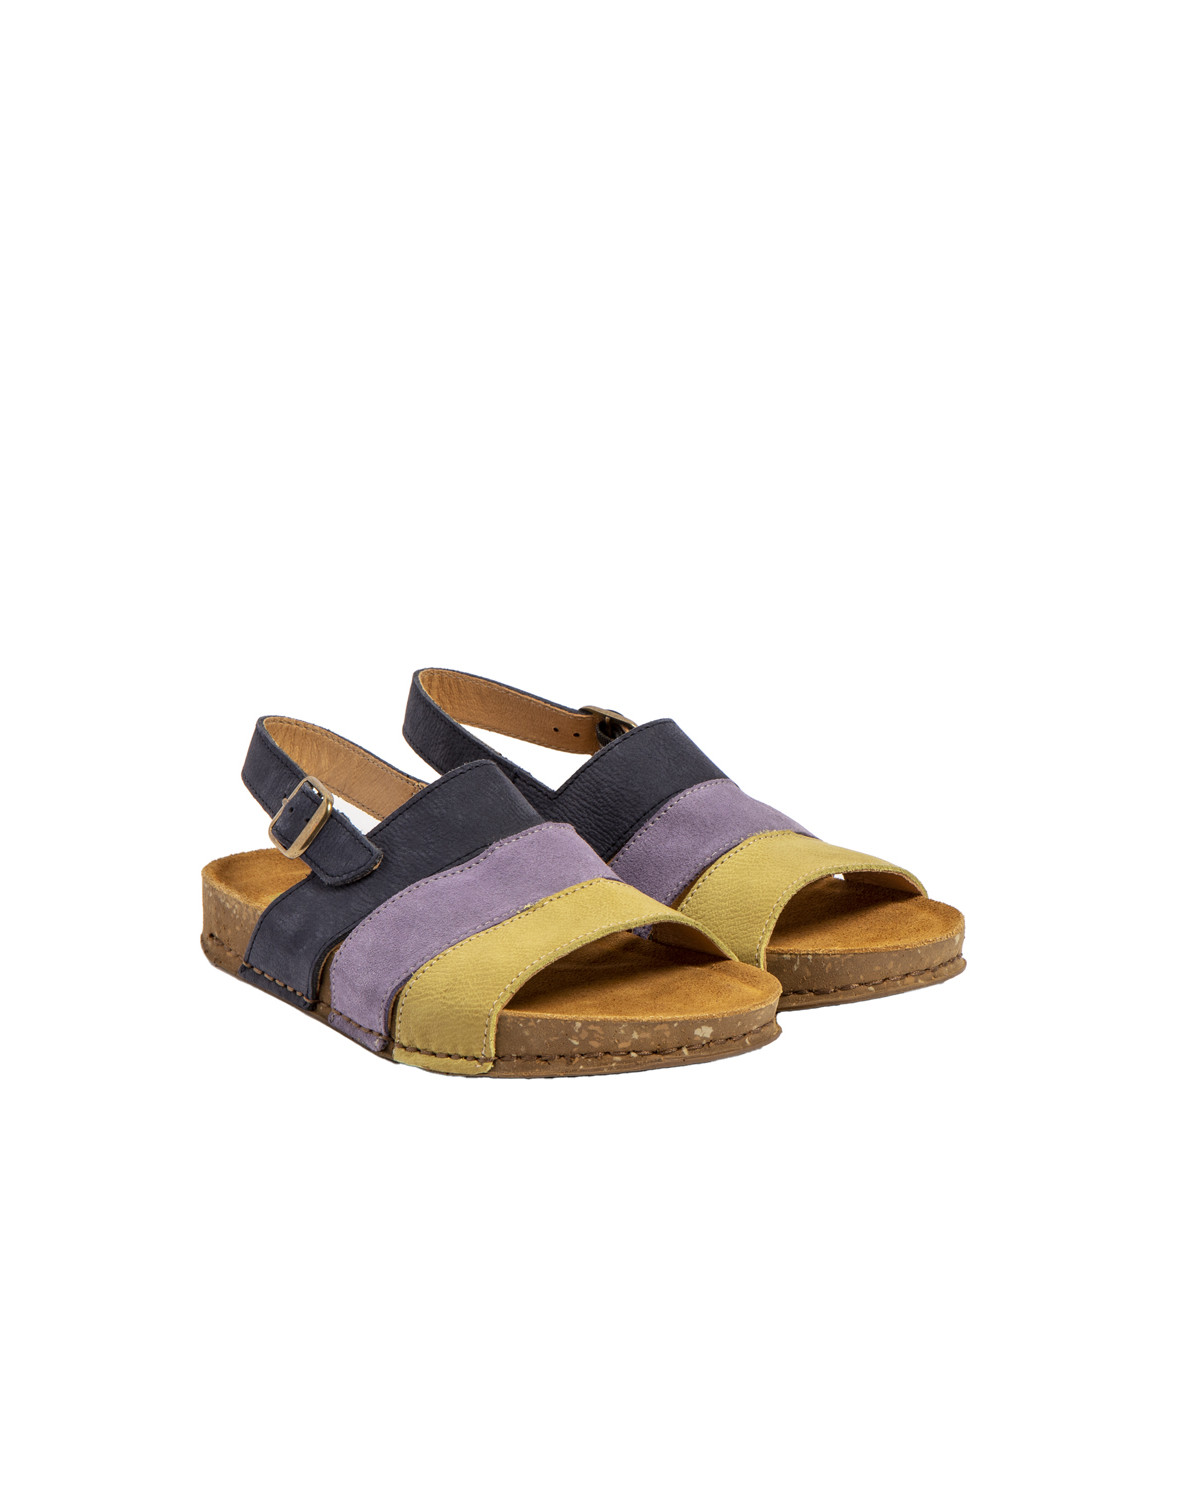 Sandales confortables plates en cuir et daim - Bleu - El naturalista